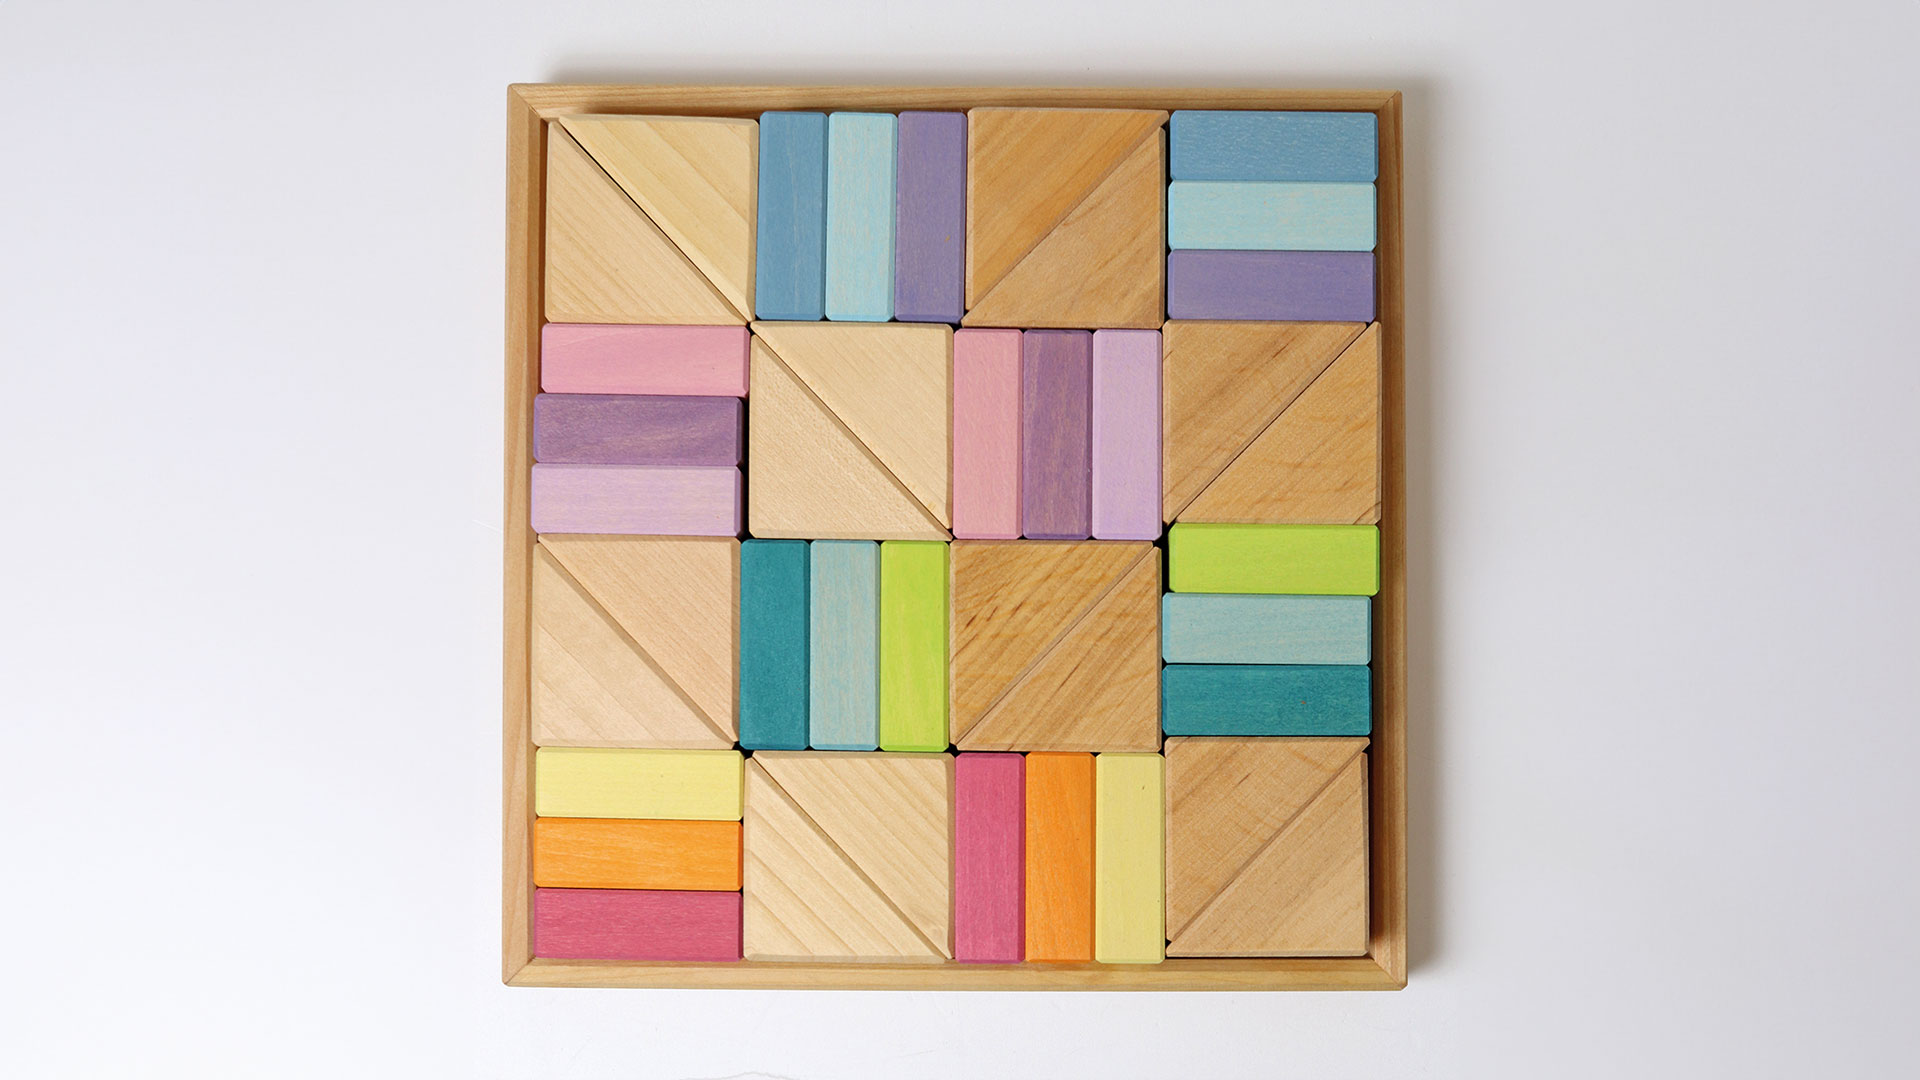 Holzrahmen mit pastellfarbenen und naturfarbenen Bausteinen in den Formen Dreieck und Rechteck.